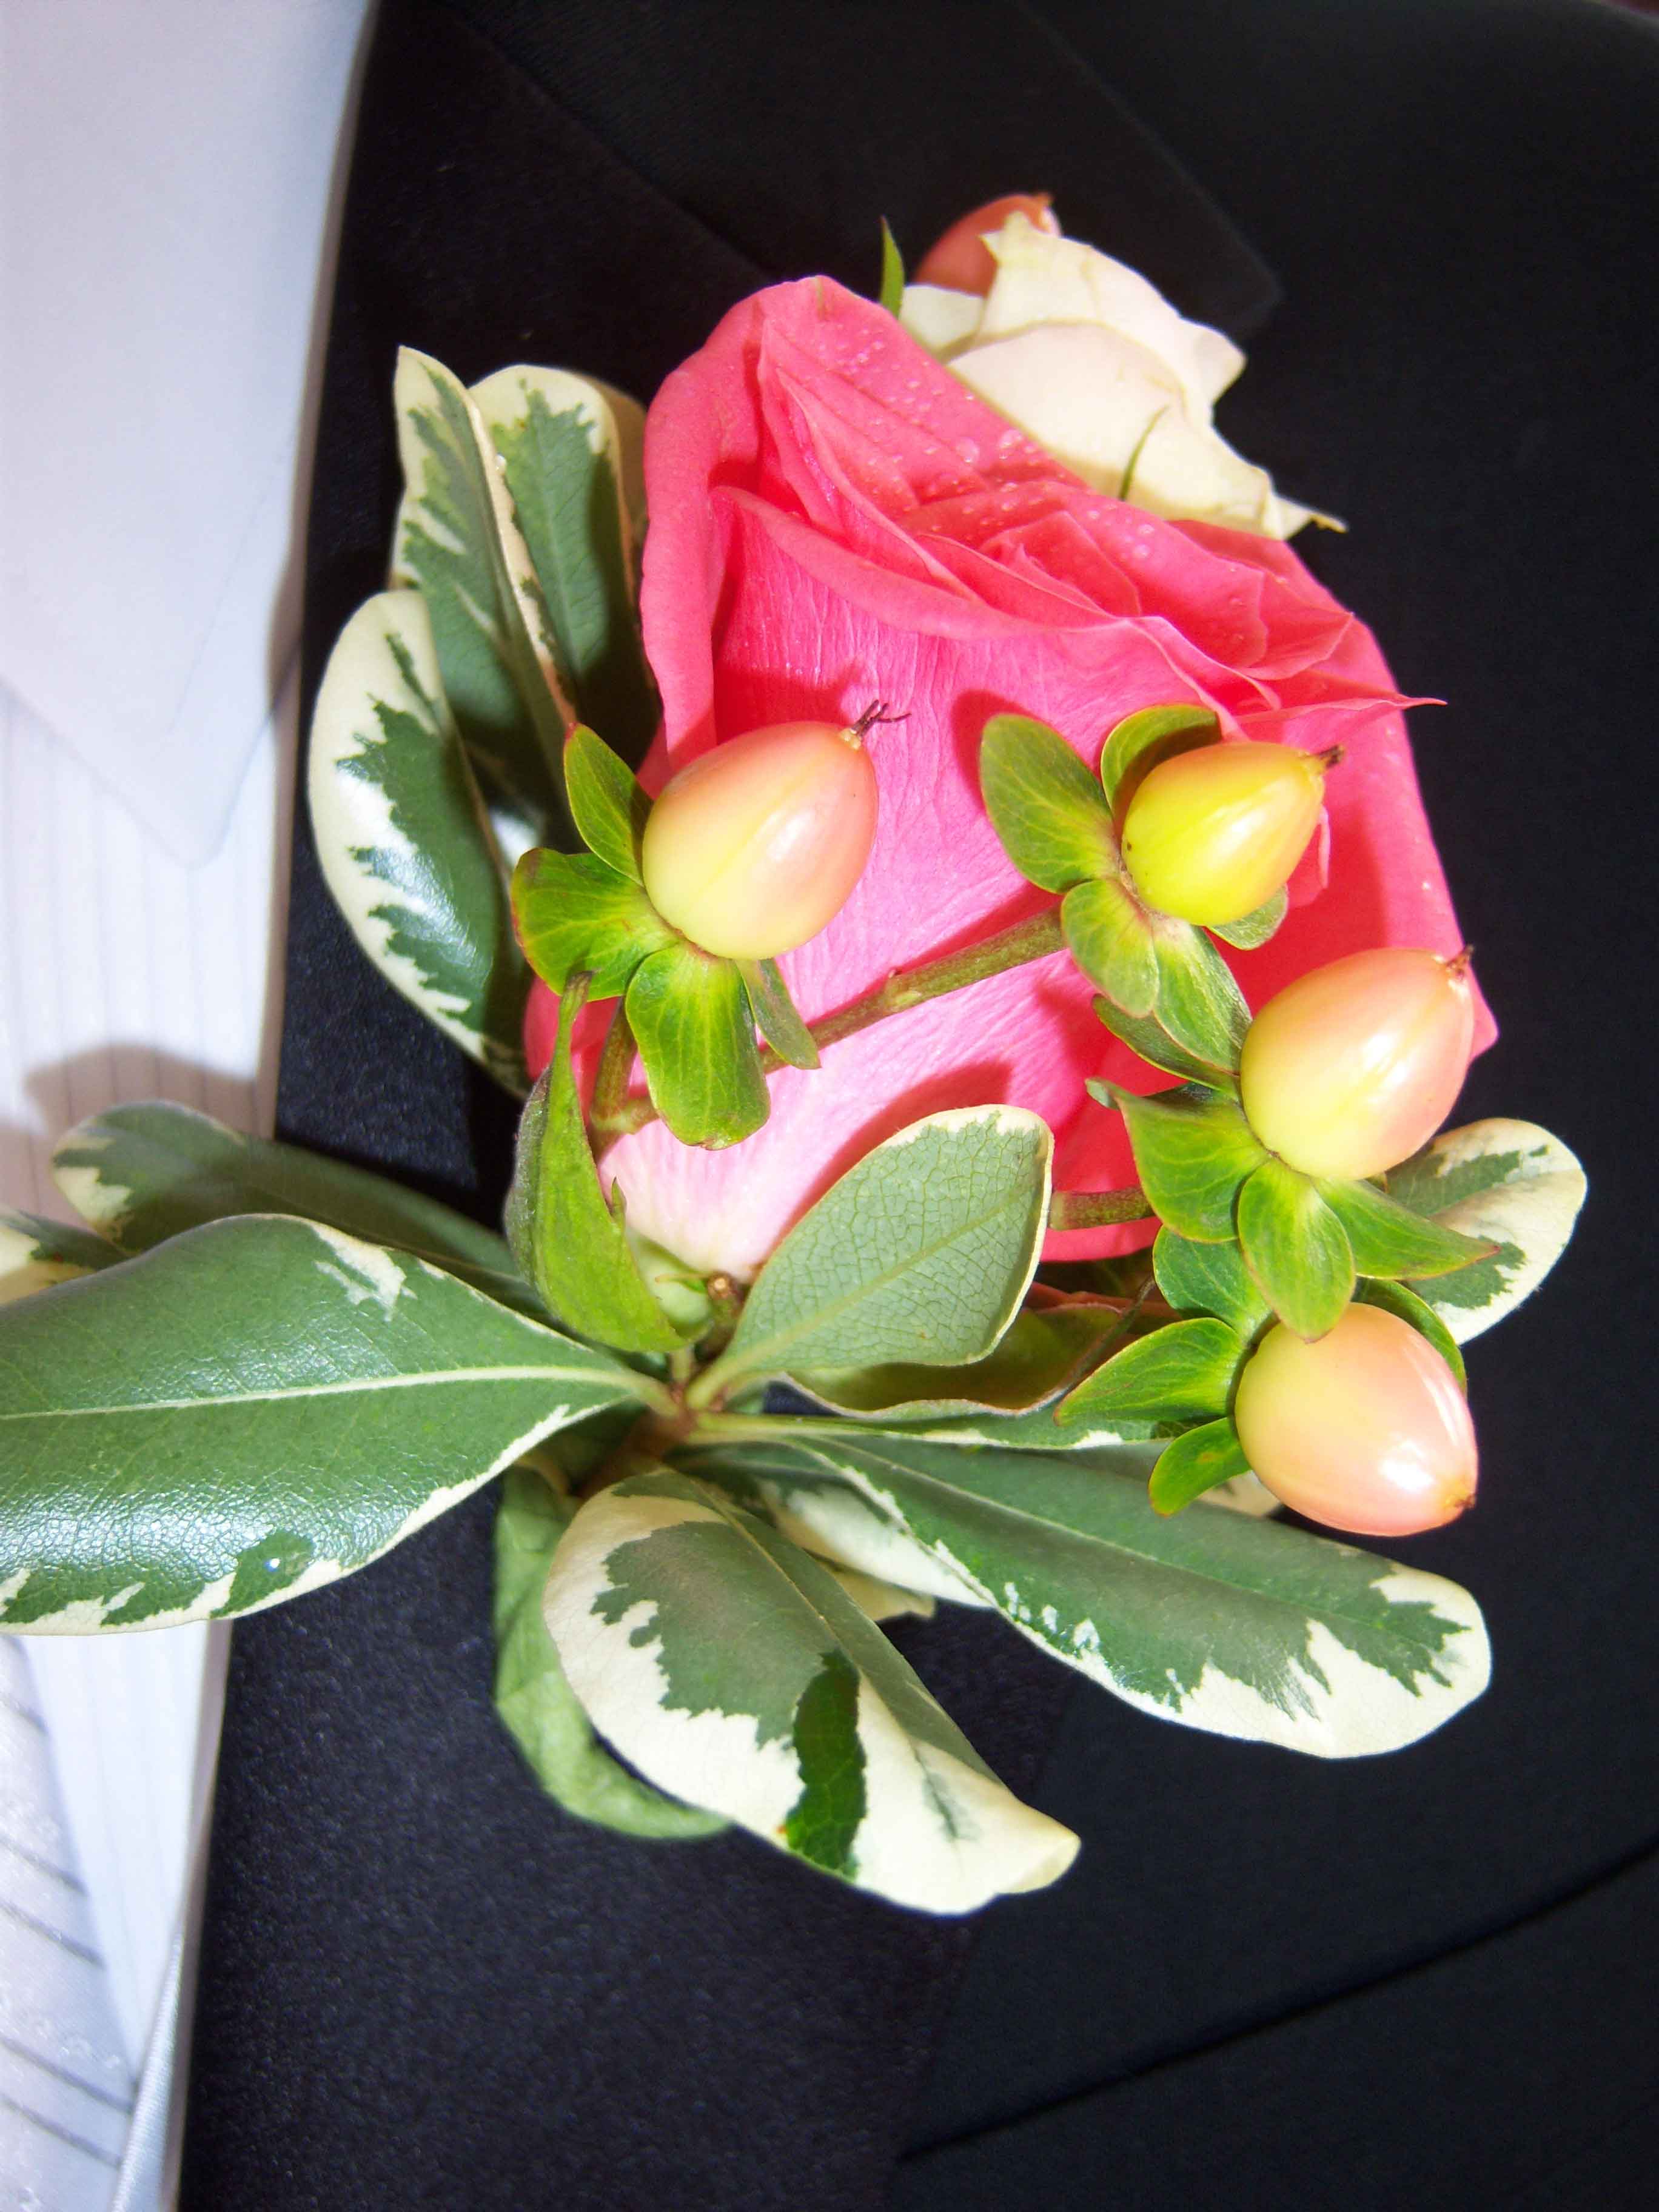 Hoa cài áo chú rể kết hợp giữa các loại hoa hồng lãng mạn